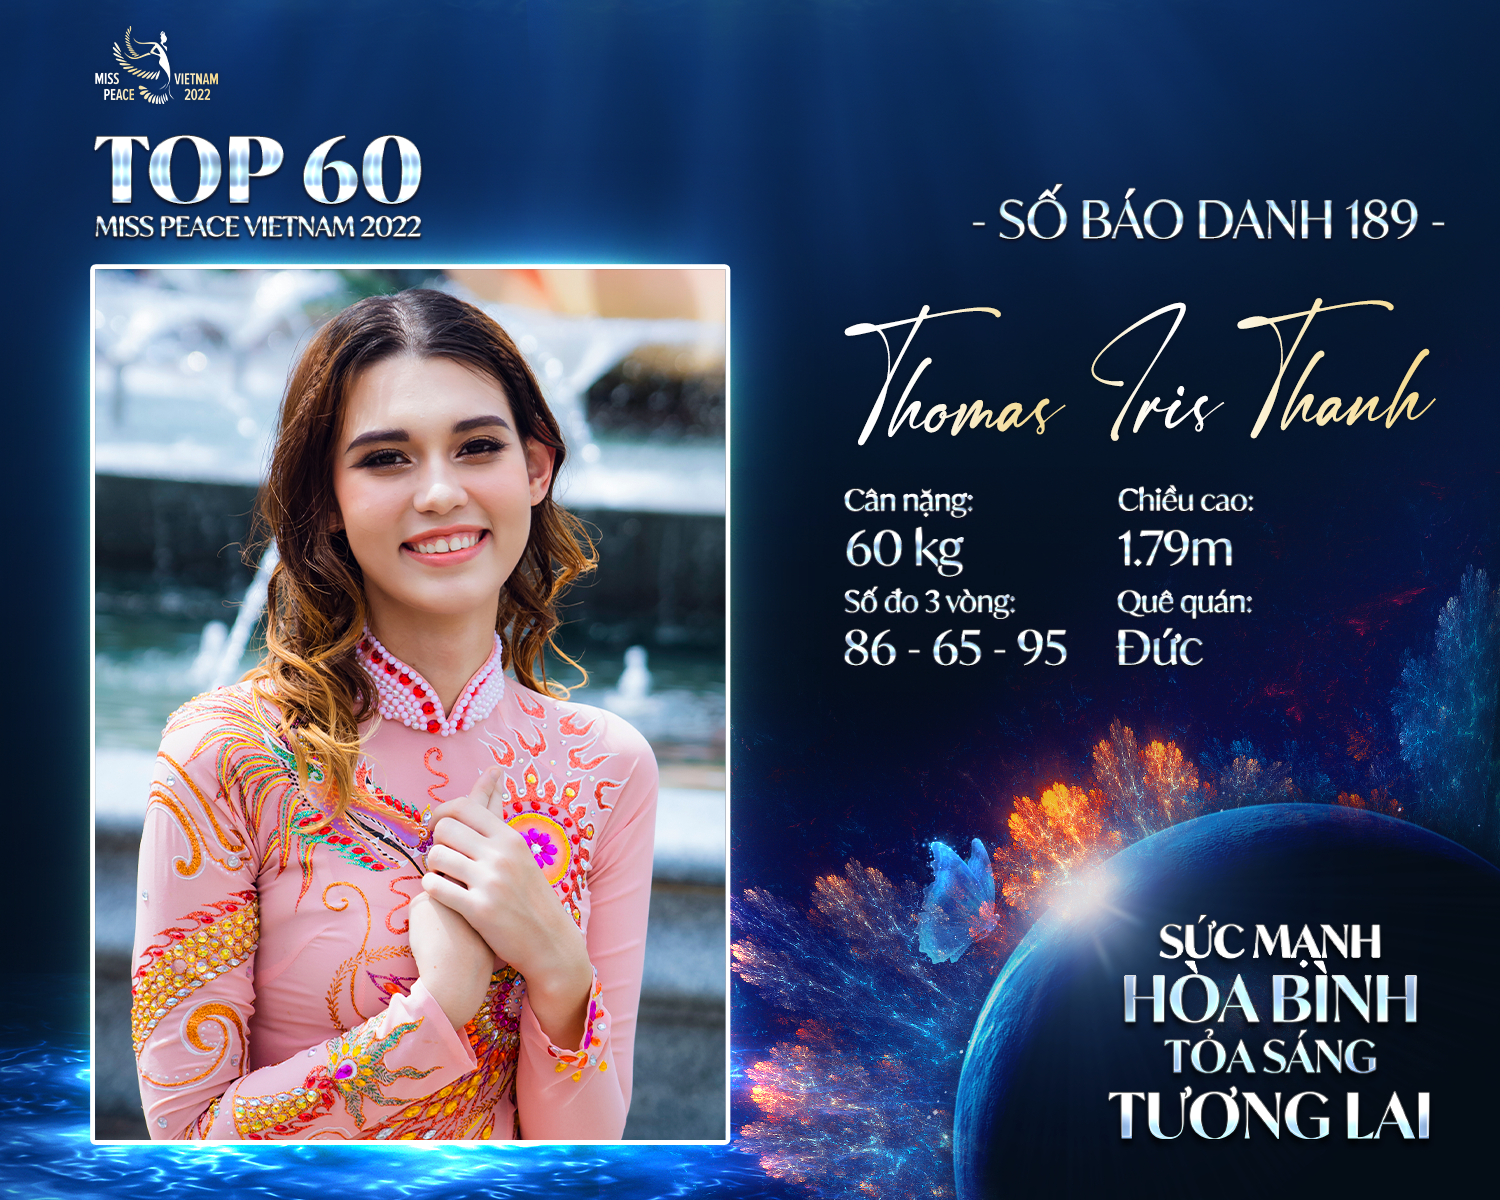 5 gương mặt sáng giá của Hoa hậu Hòa bình Việt Nam 2022 gây chú ý bởi chiều cao “khủng”, ngoại ngữ “đỉnh” - Ảnh 3.